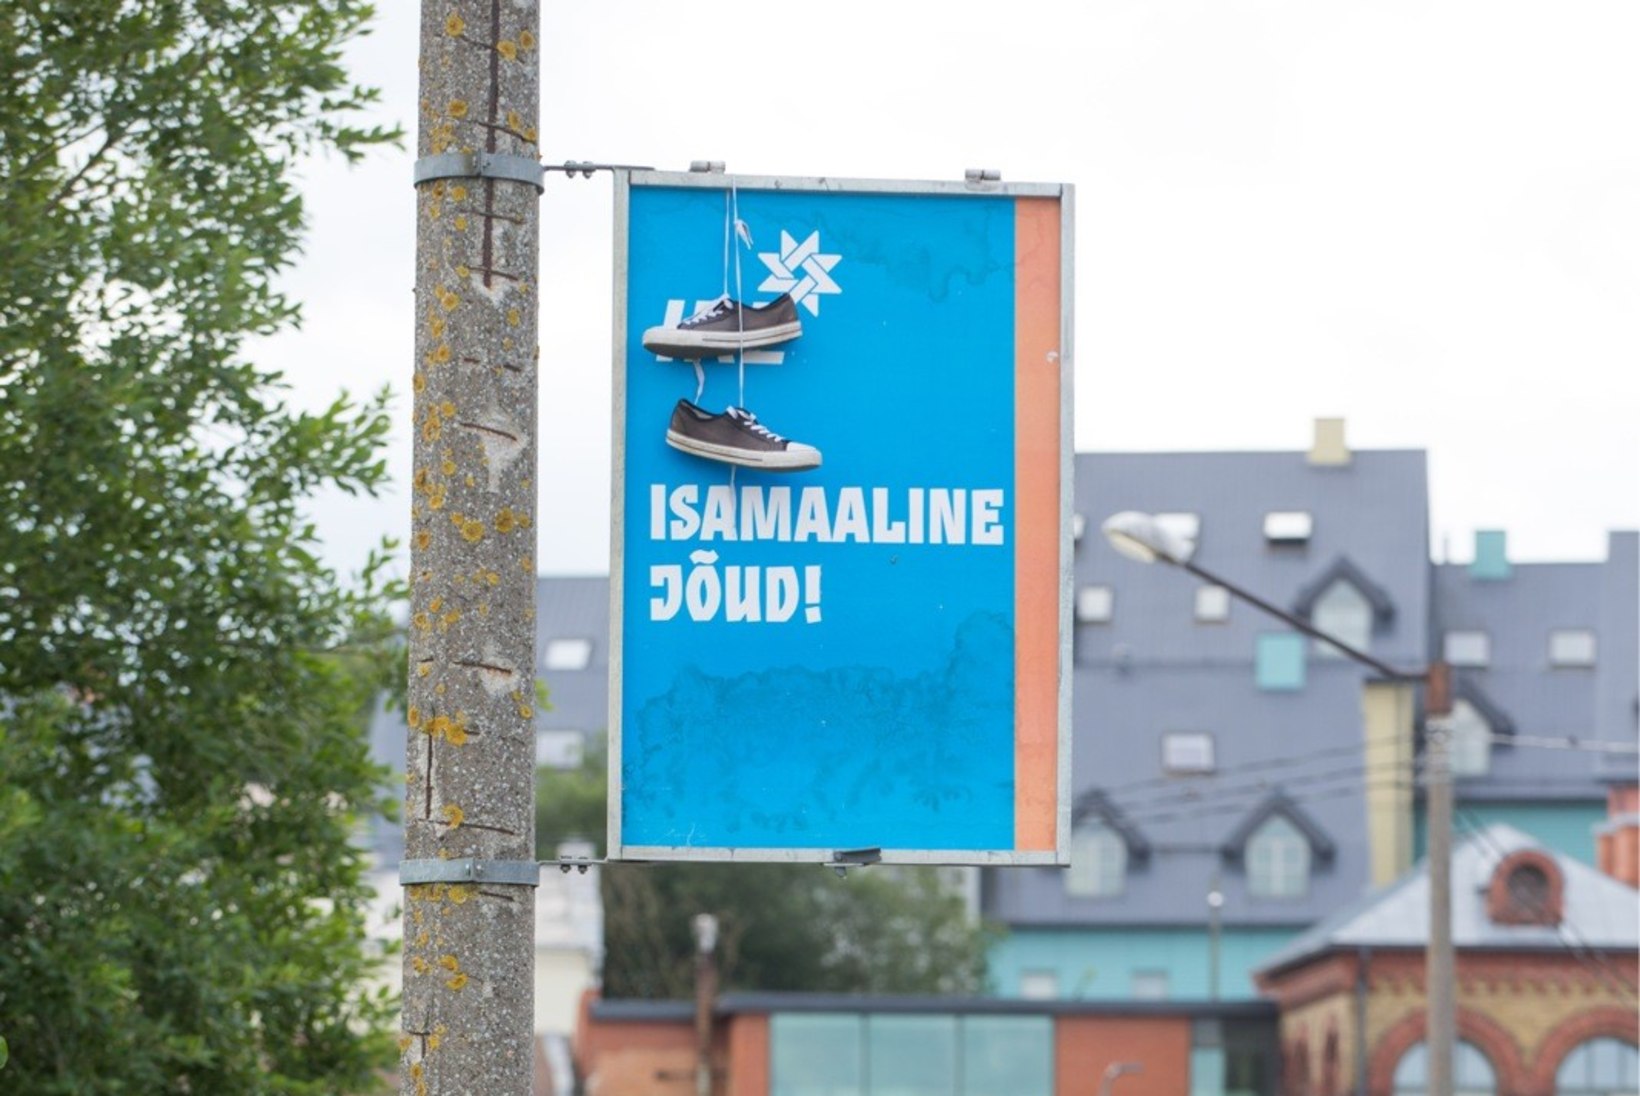 Kihlveokontor: IRL Tallinnas valimiskünnist ei ületa